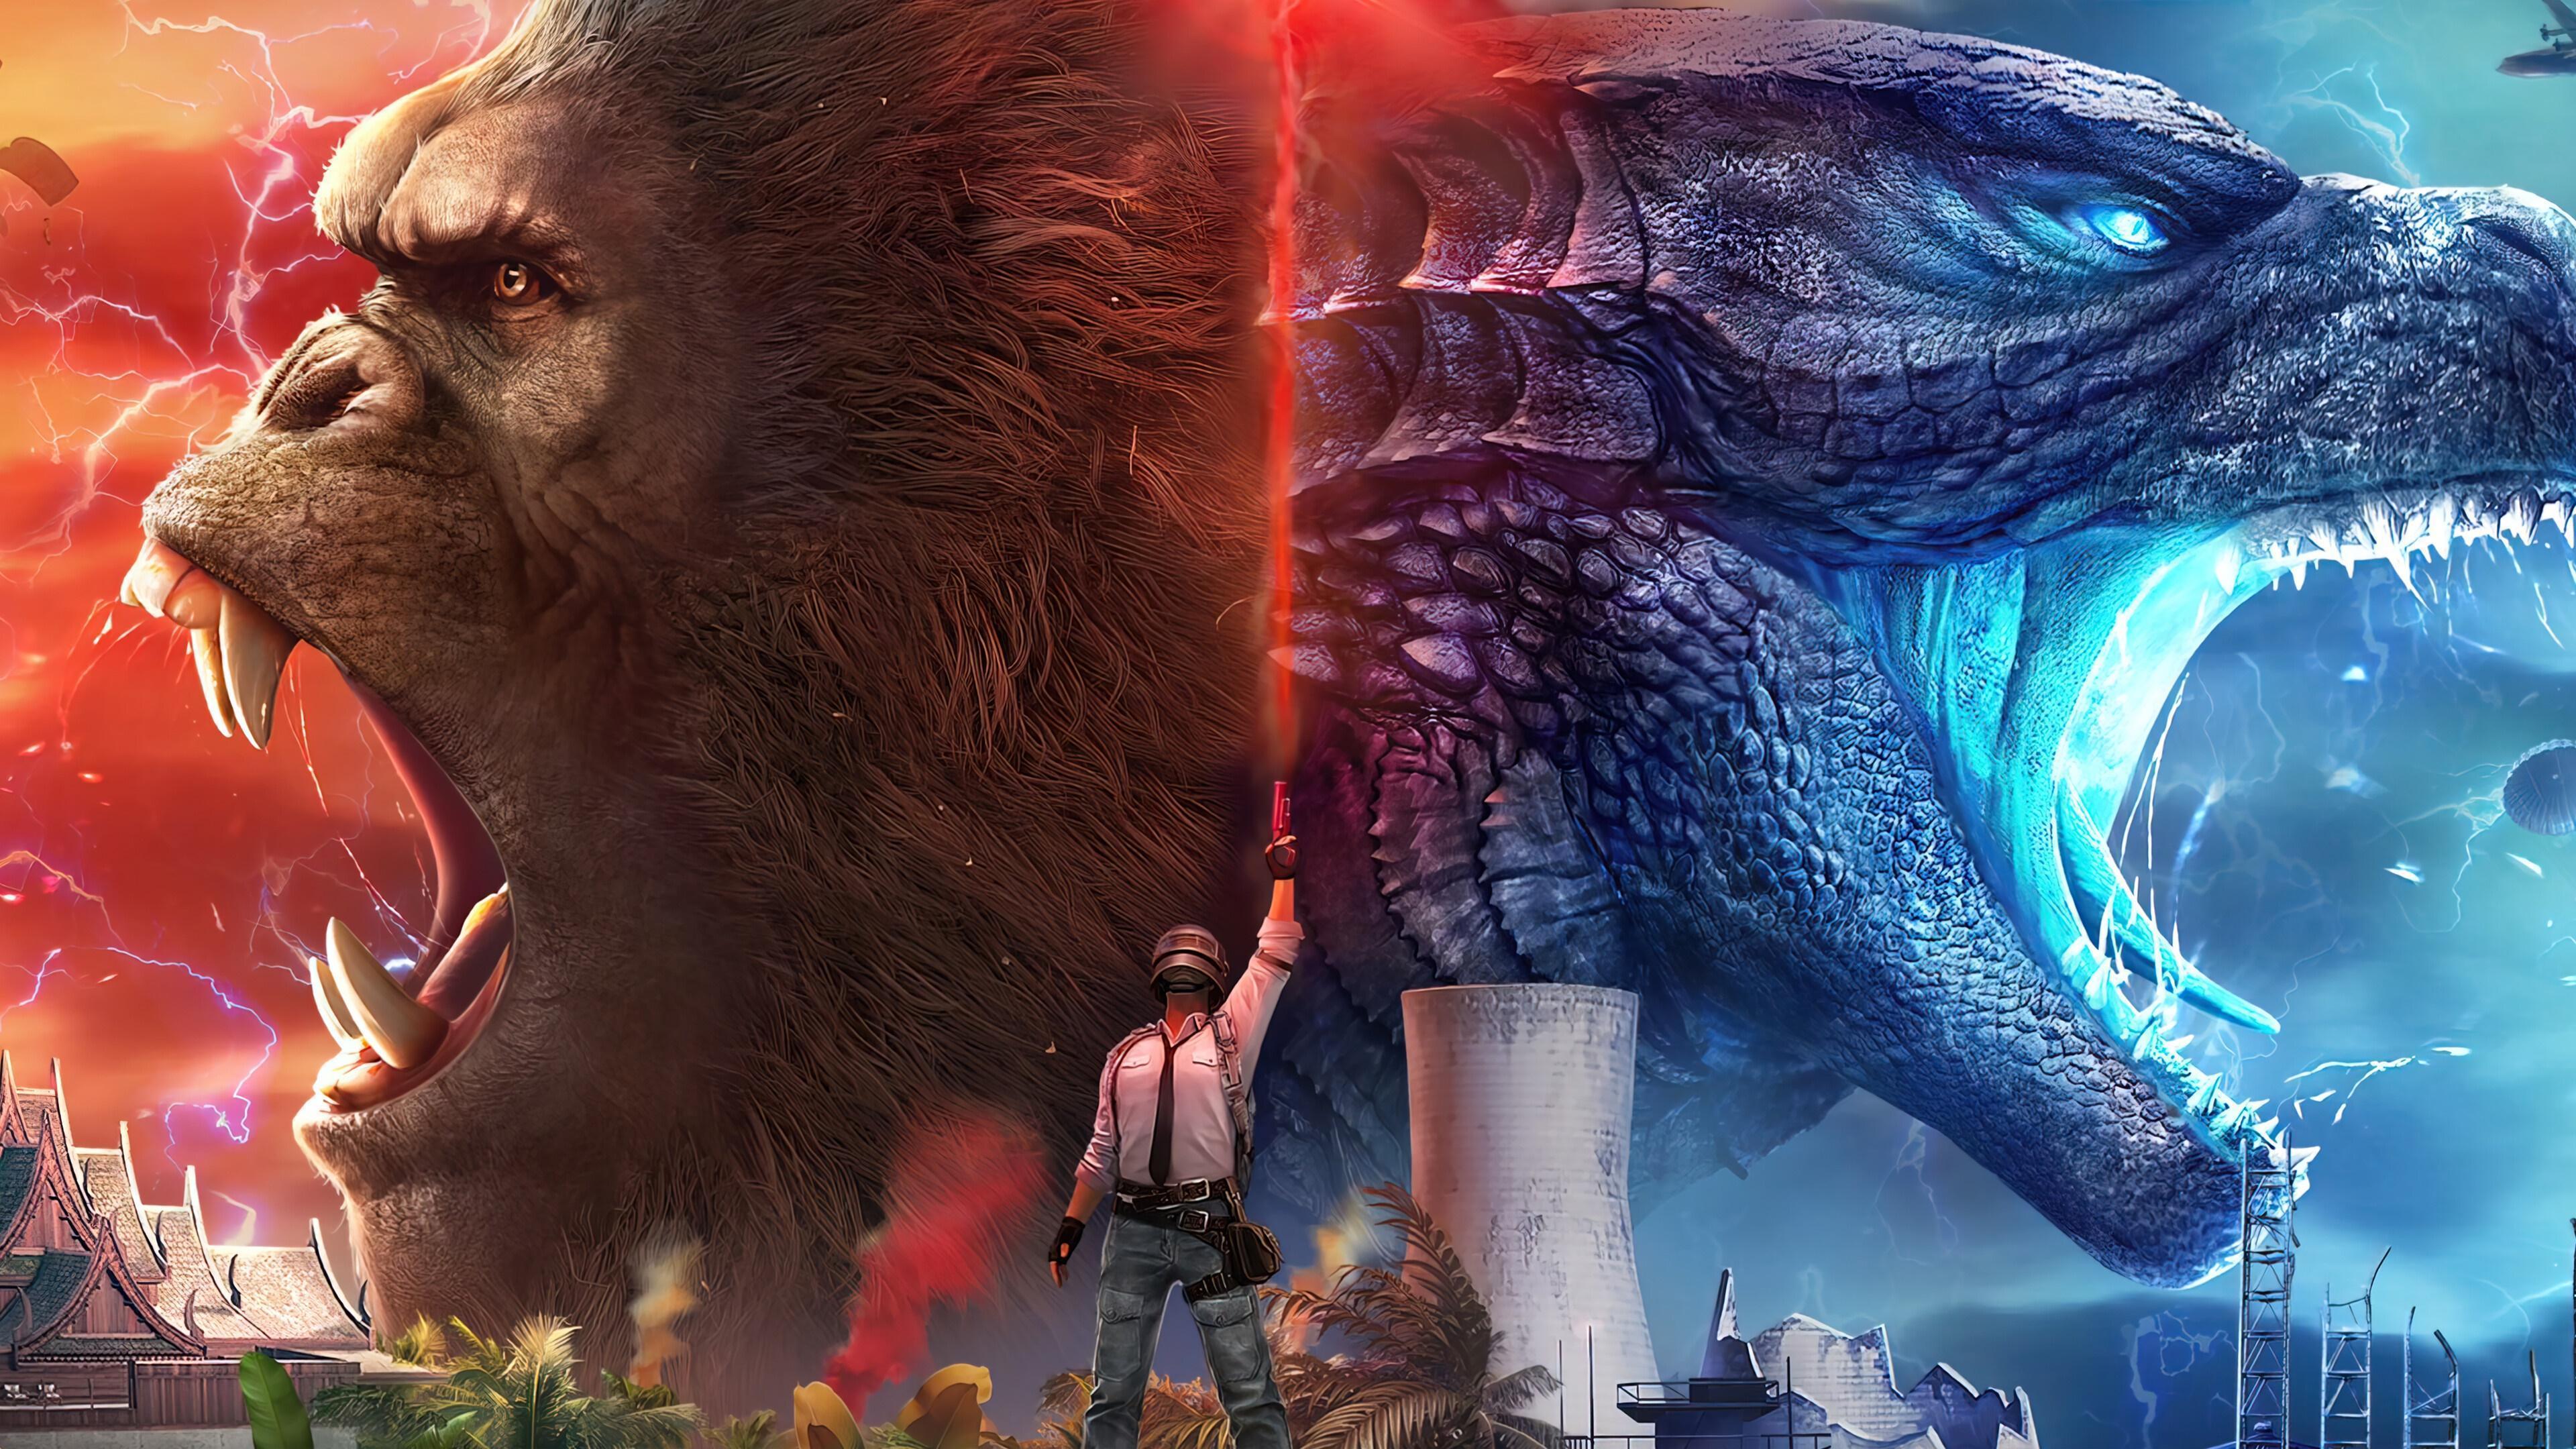 HD wallpaper, Pc, 4K, King Kong Vs Godzilla, Mobile, Pubg